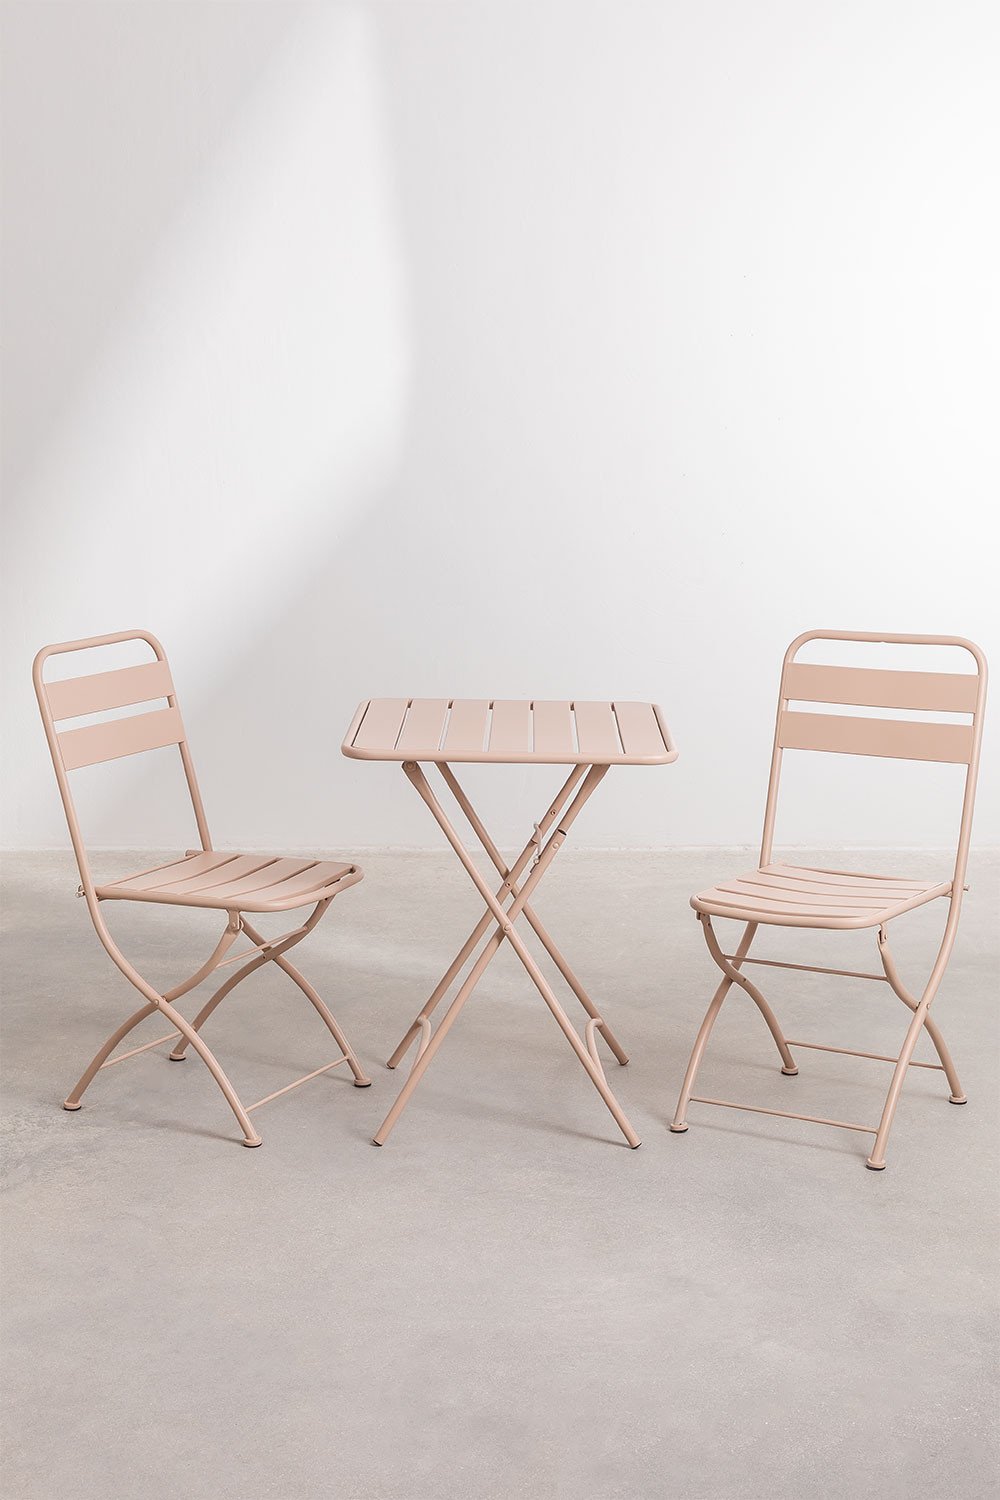 Tuinset met een inklapbare tafel (60X60 cm) & 2 Klapstoelen Janti, galerij beeld 1